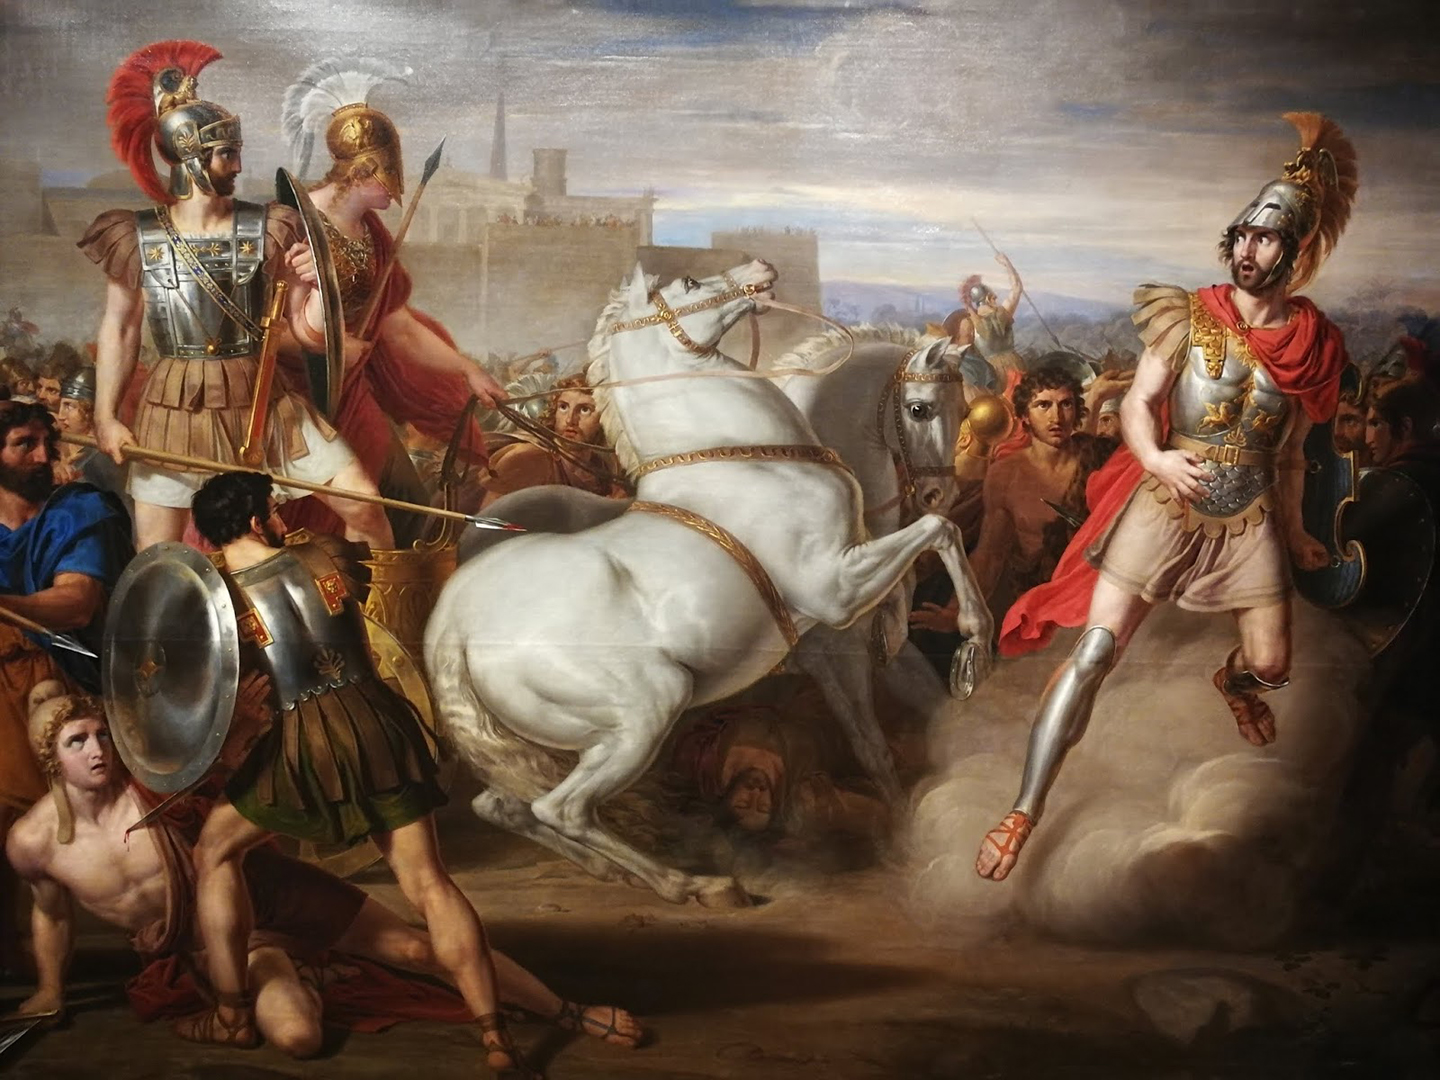 Bức “Diomedes, assisted by Minerva (Athena), wounds Mars (Ares)” (Diomedes, được Thần Minerva (Athena) trợ giúp, làm Mars (Ares) bị thương), họa sỹ Rafael Tejeo, năm 1831. Tranh sơn dầu trên vải canvas. Bảo tàng Mỹ thuật Murcia, Tây Ban Nha. (Ảnh: Tư liệu công cộng)